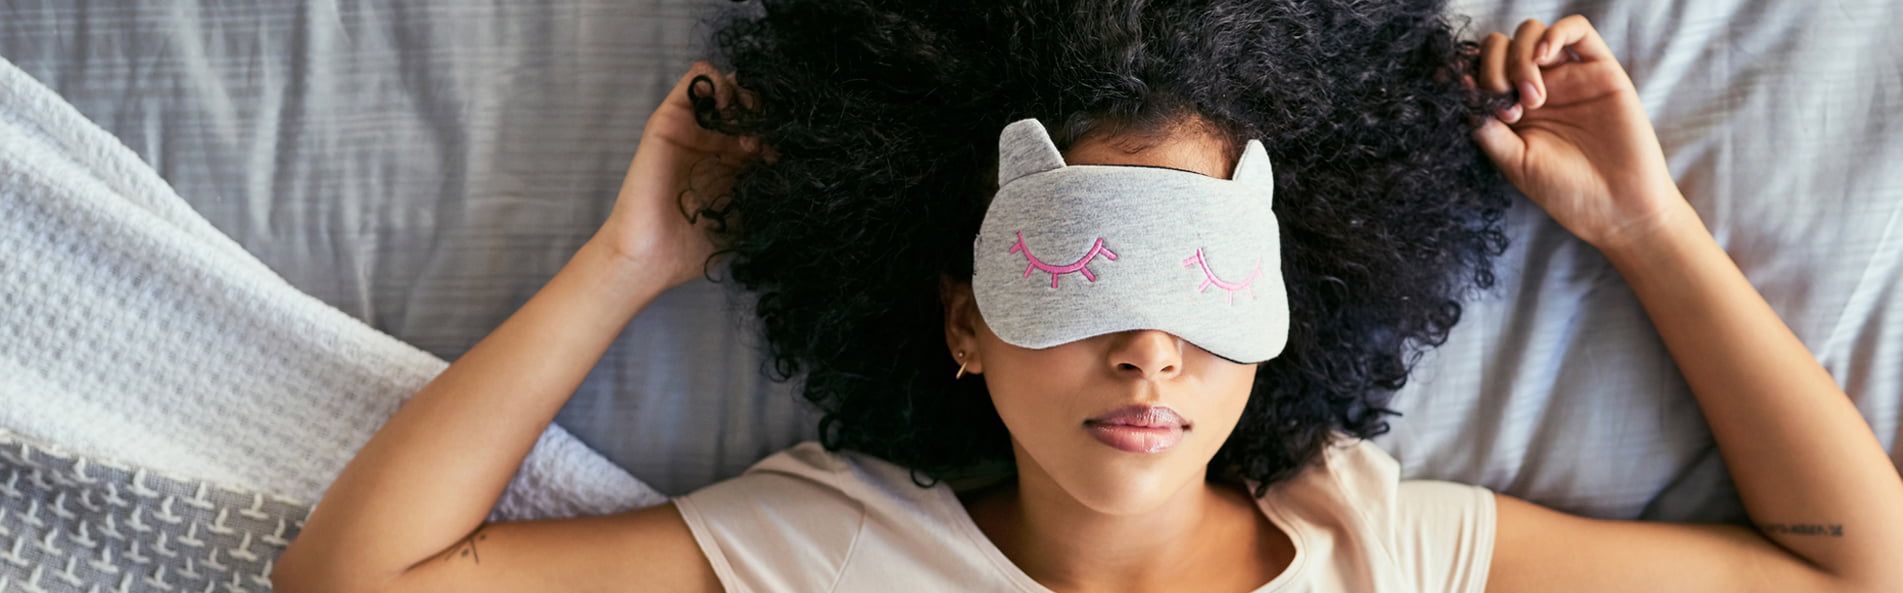 Woman wearing eye mask in bed